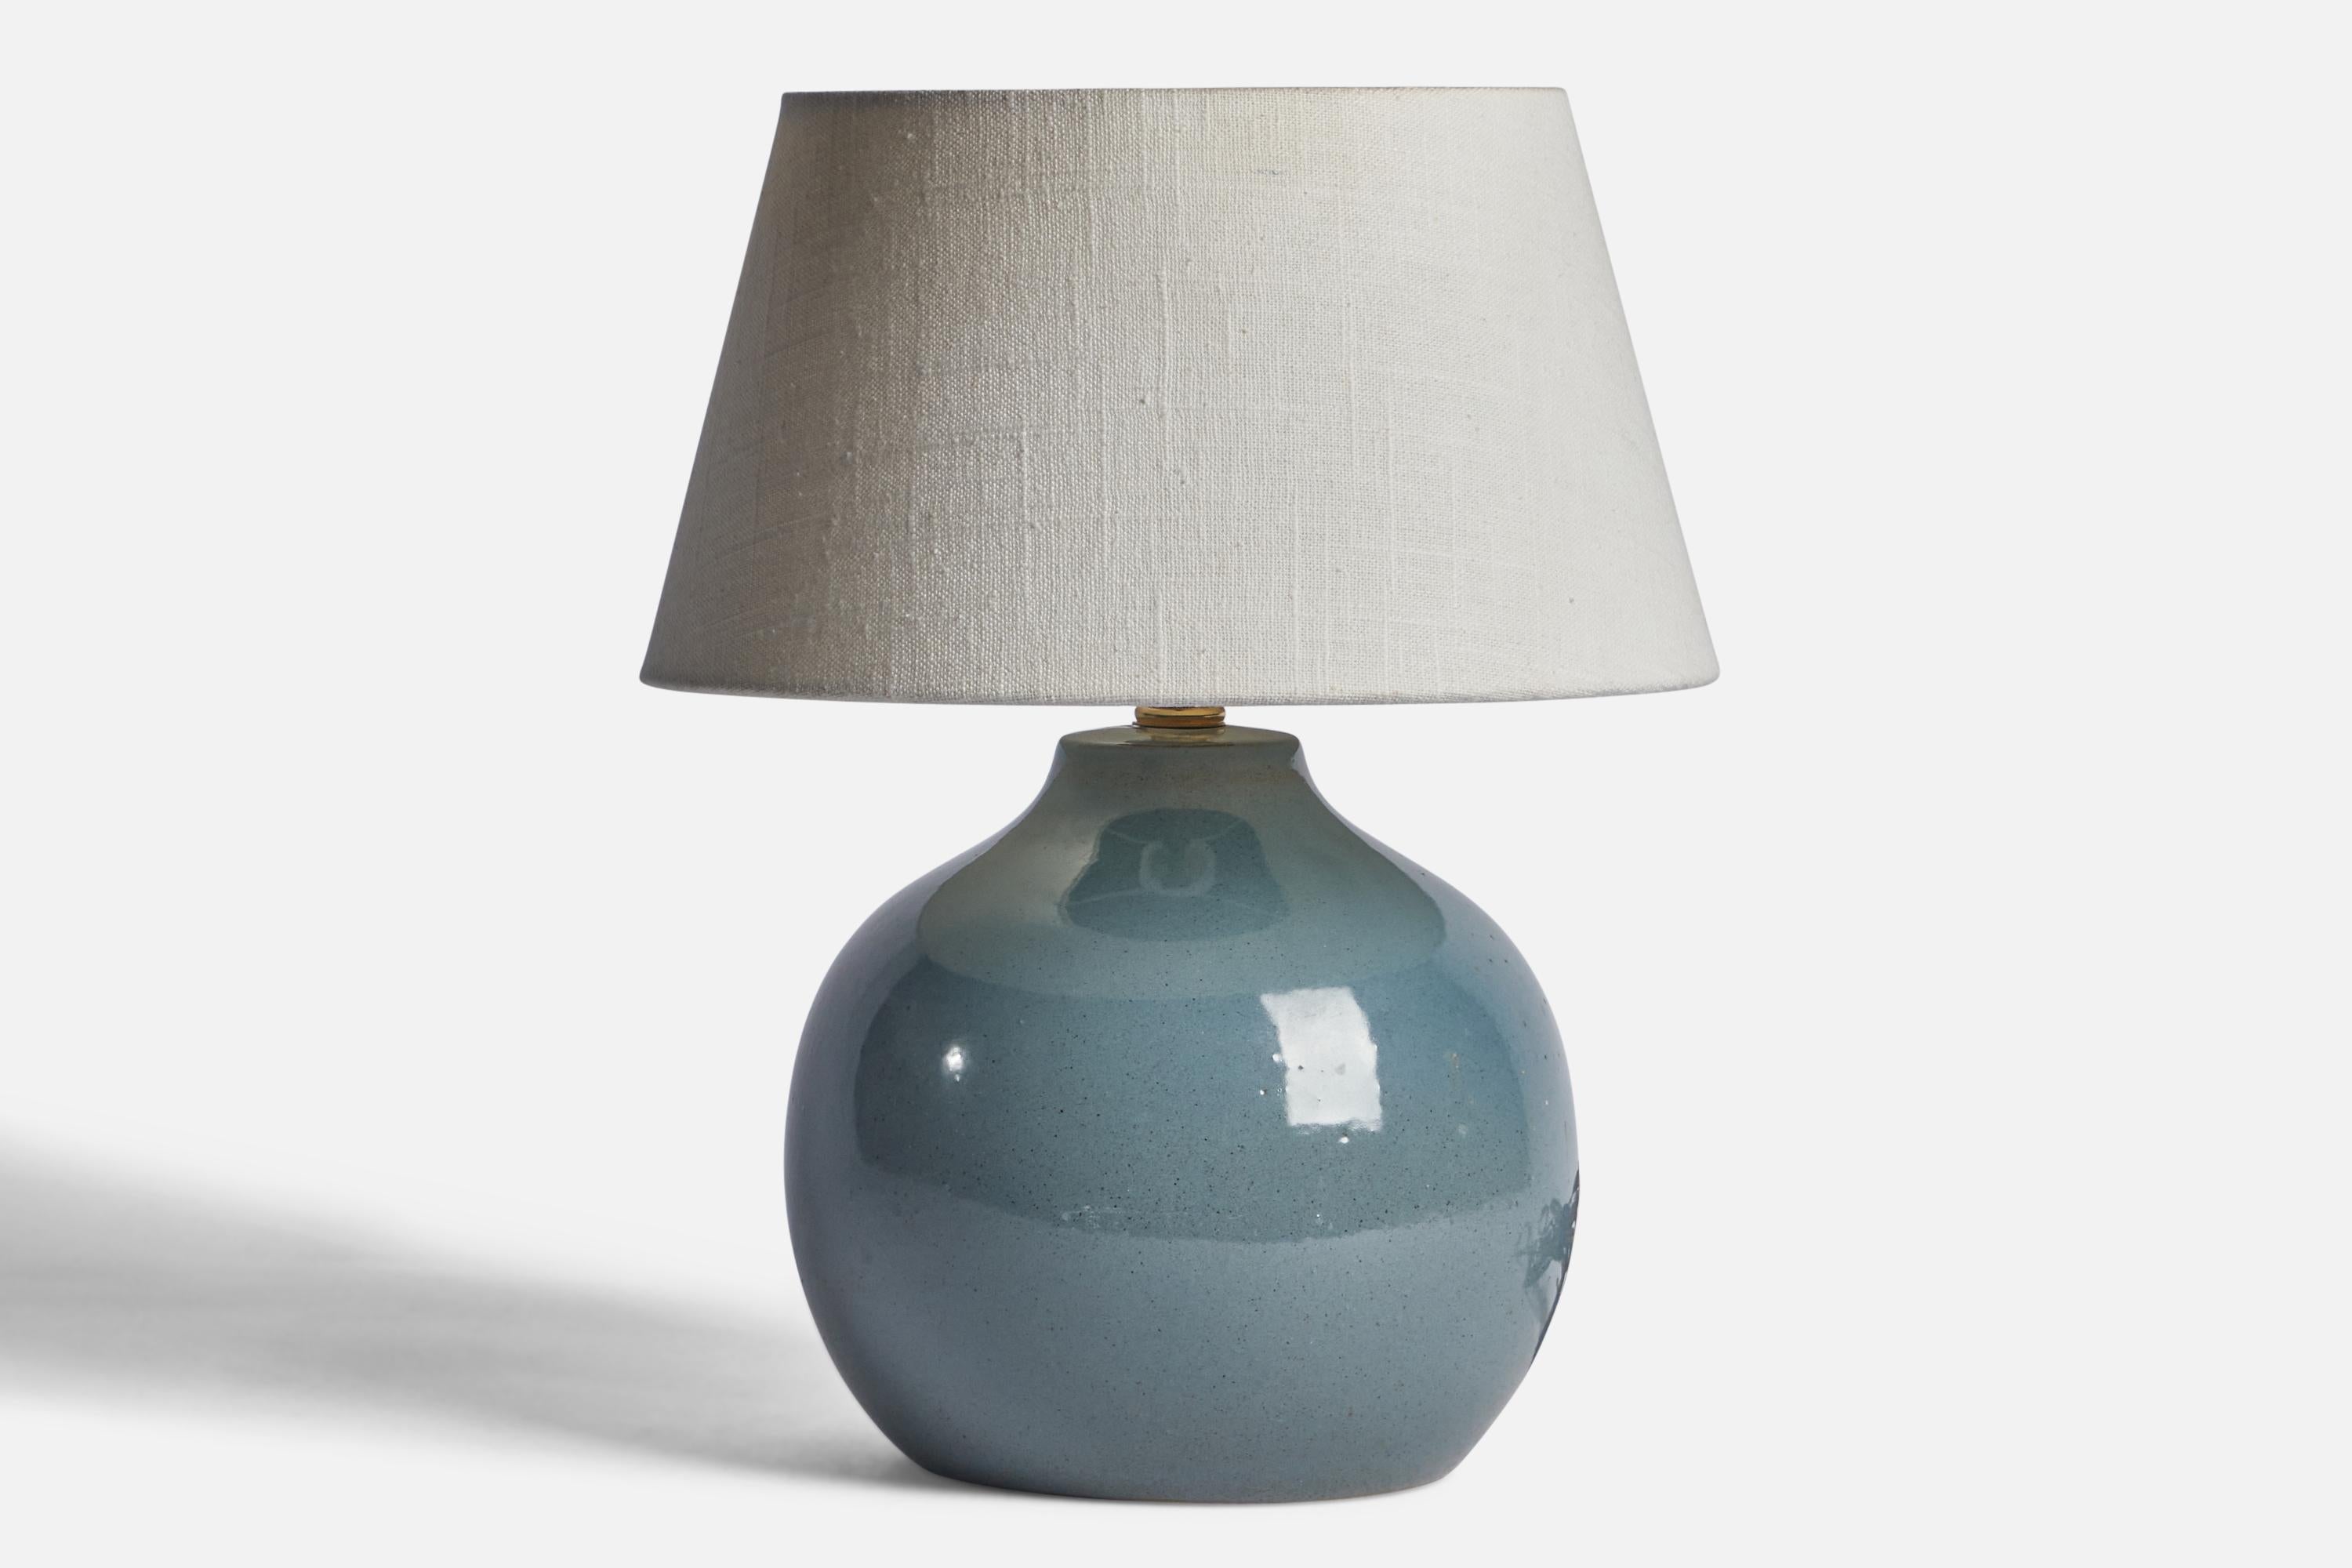 Lampe de table en céramique émaillée bleue conçue par Jane & Gordon Martz et produite par Marshall Studios, États-Unis, années 1960.

Dimensions de la lampe (pouces) : 9.75